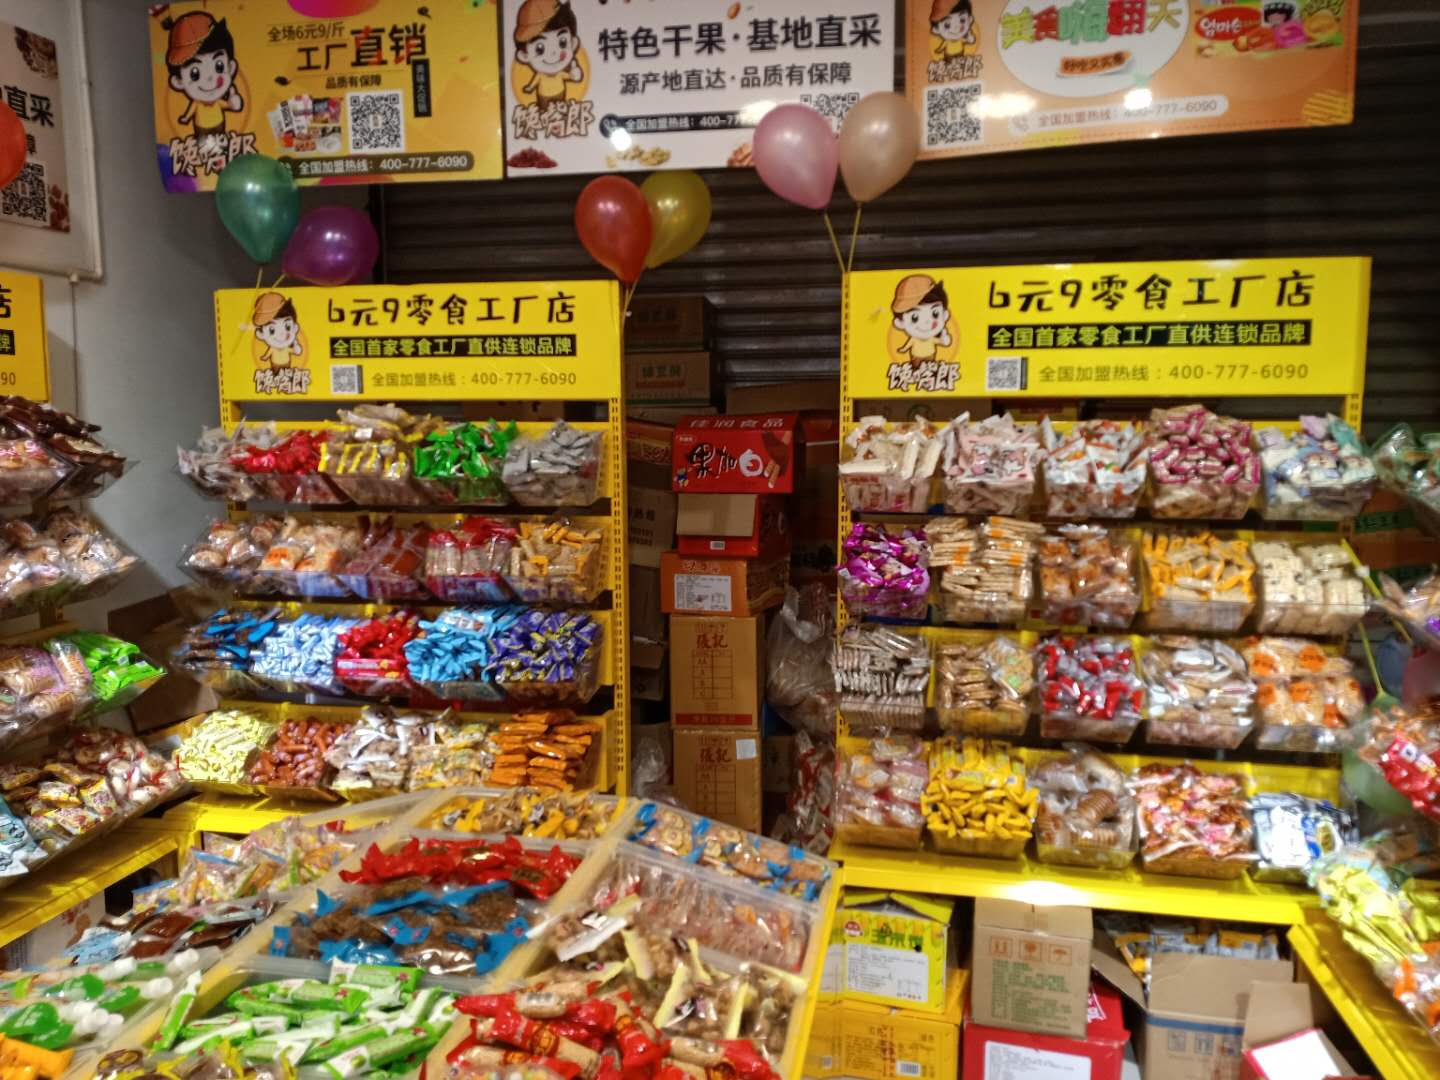 馋嘴郎荣县望景路6块9零食加盟店开业